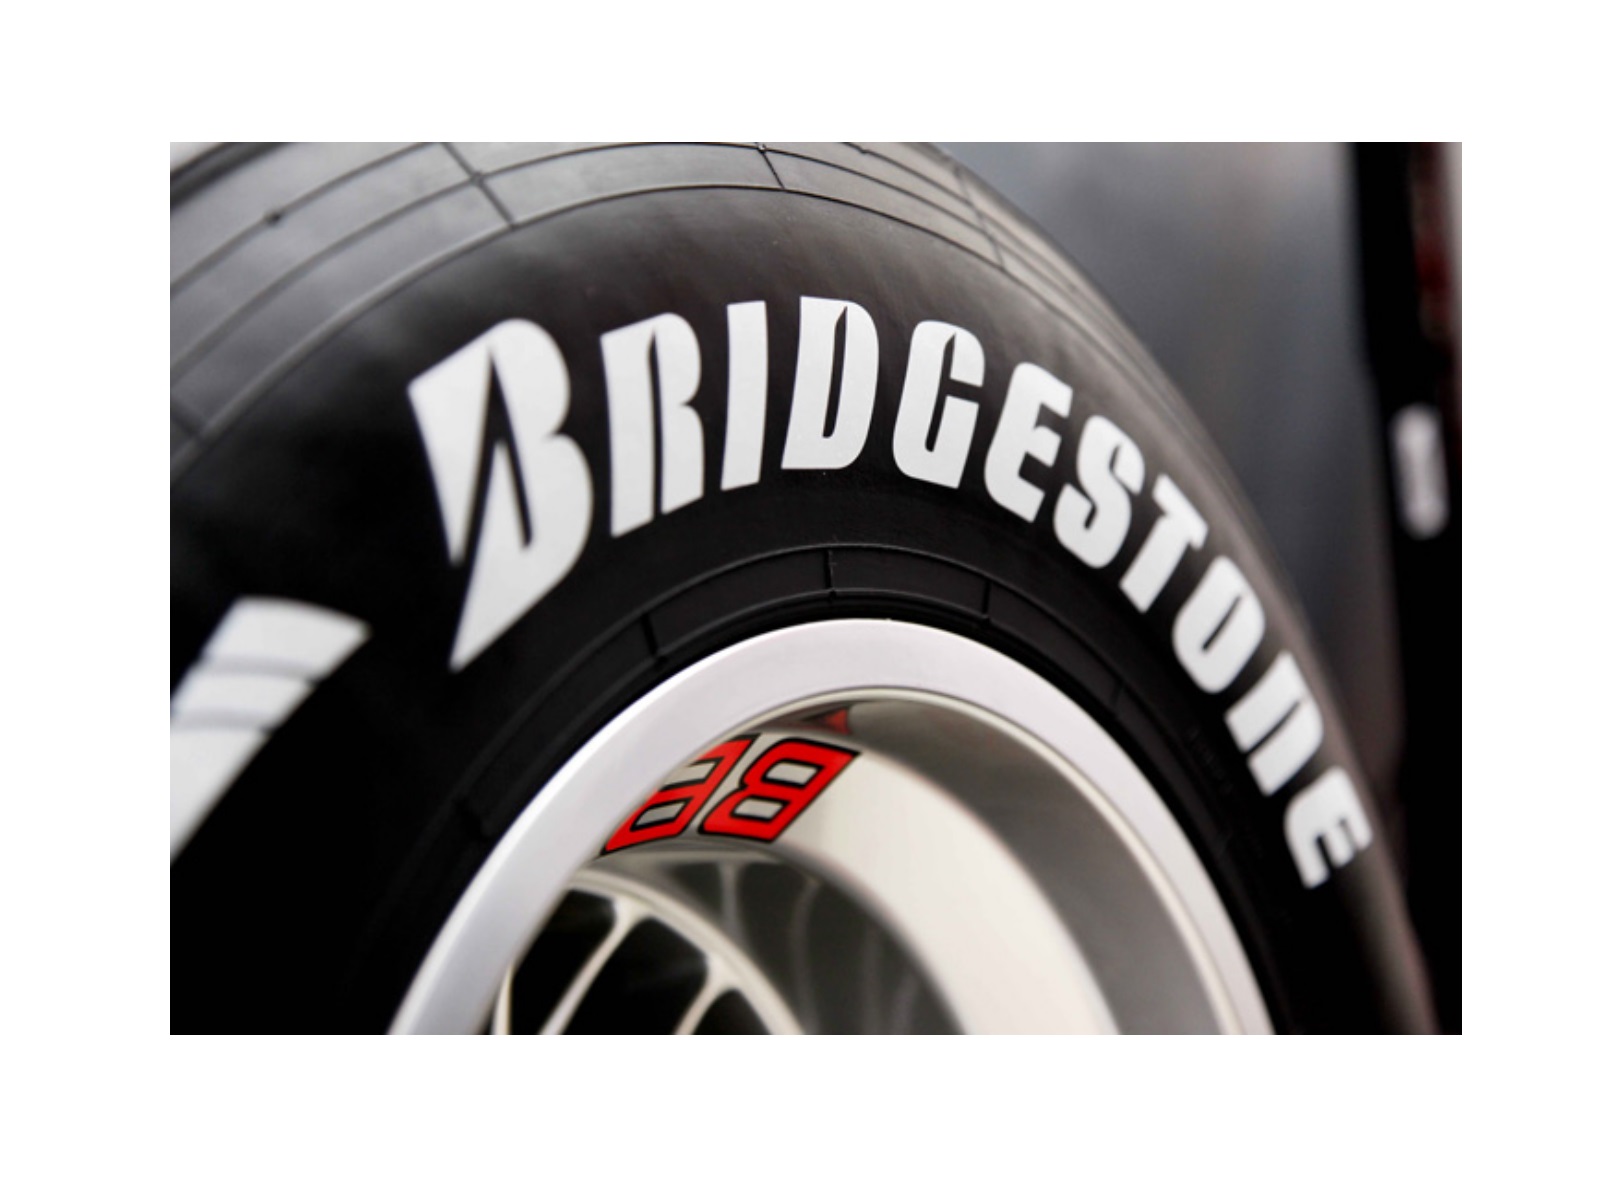 E-katalog: В России растет спрос на японские шины Bridgestone